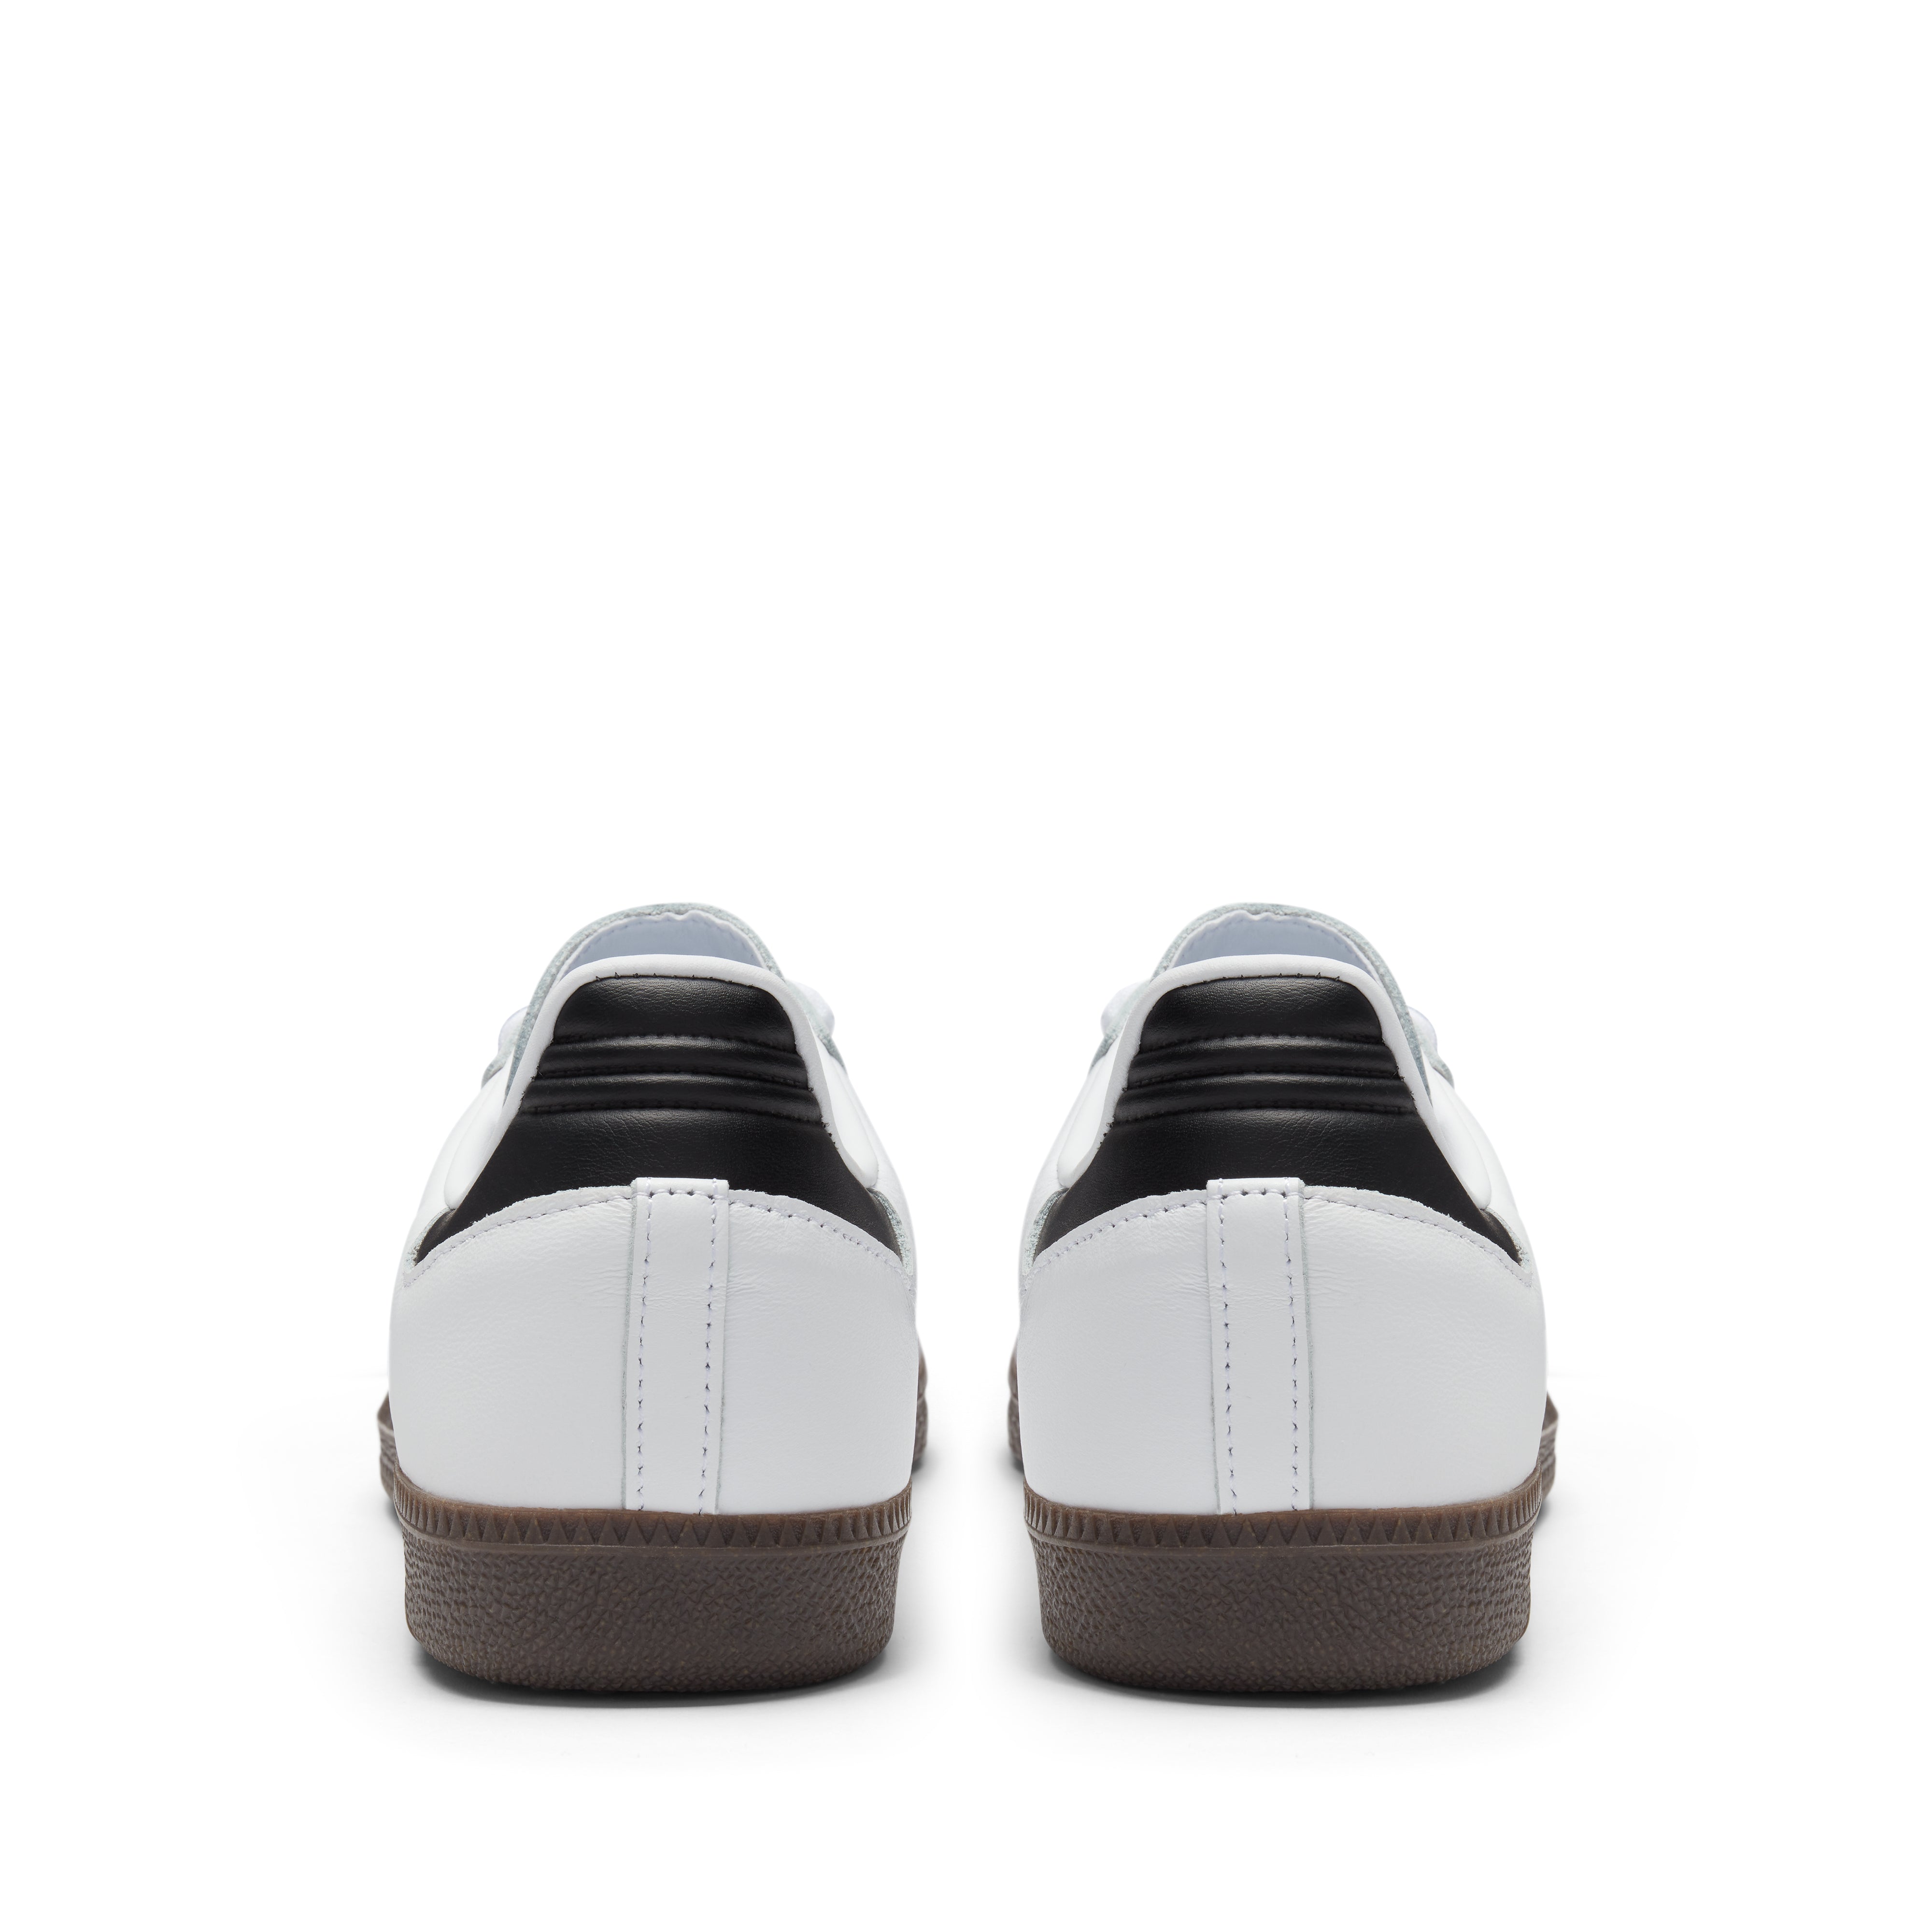 Adidas - Samba OG - (Cloud White/Core Black/Clear Granite)